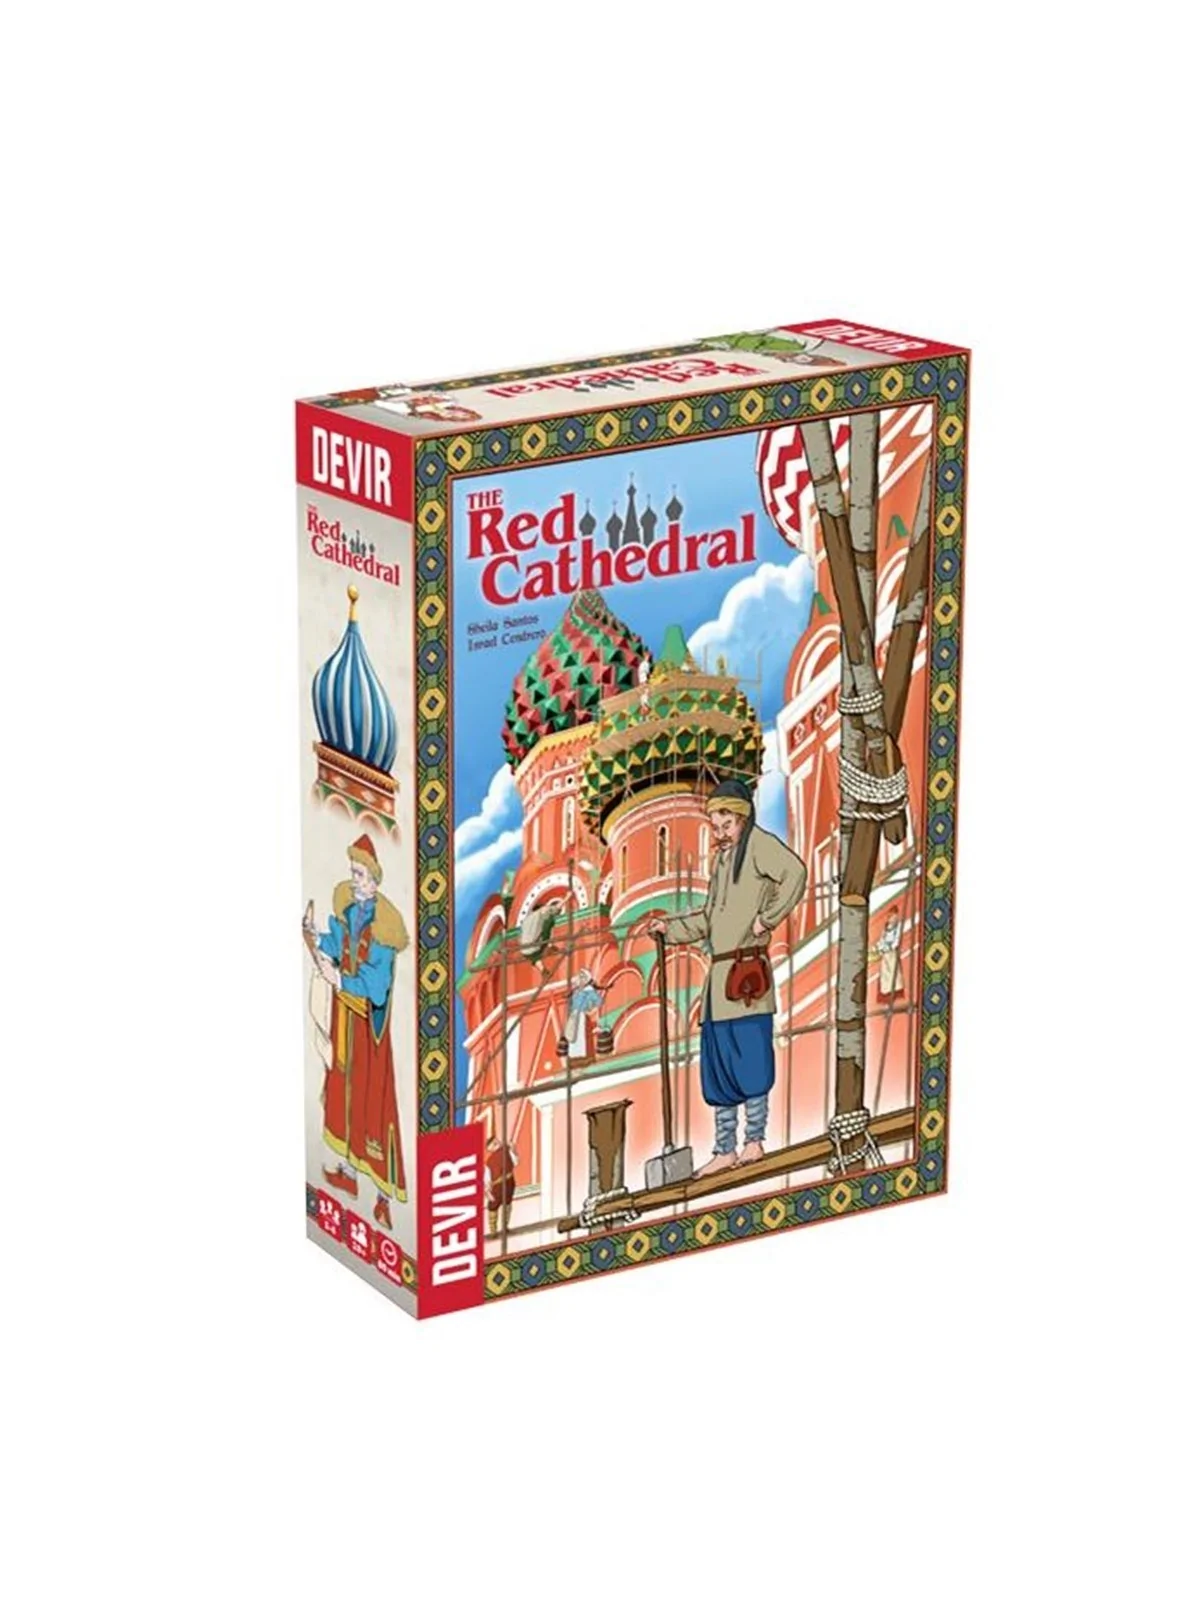 Comprar The Red Cathedral barato al mejor precio 27,96 € de Devir